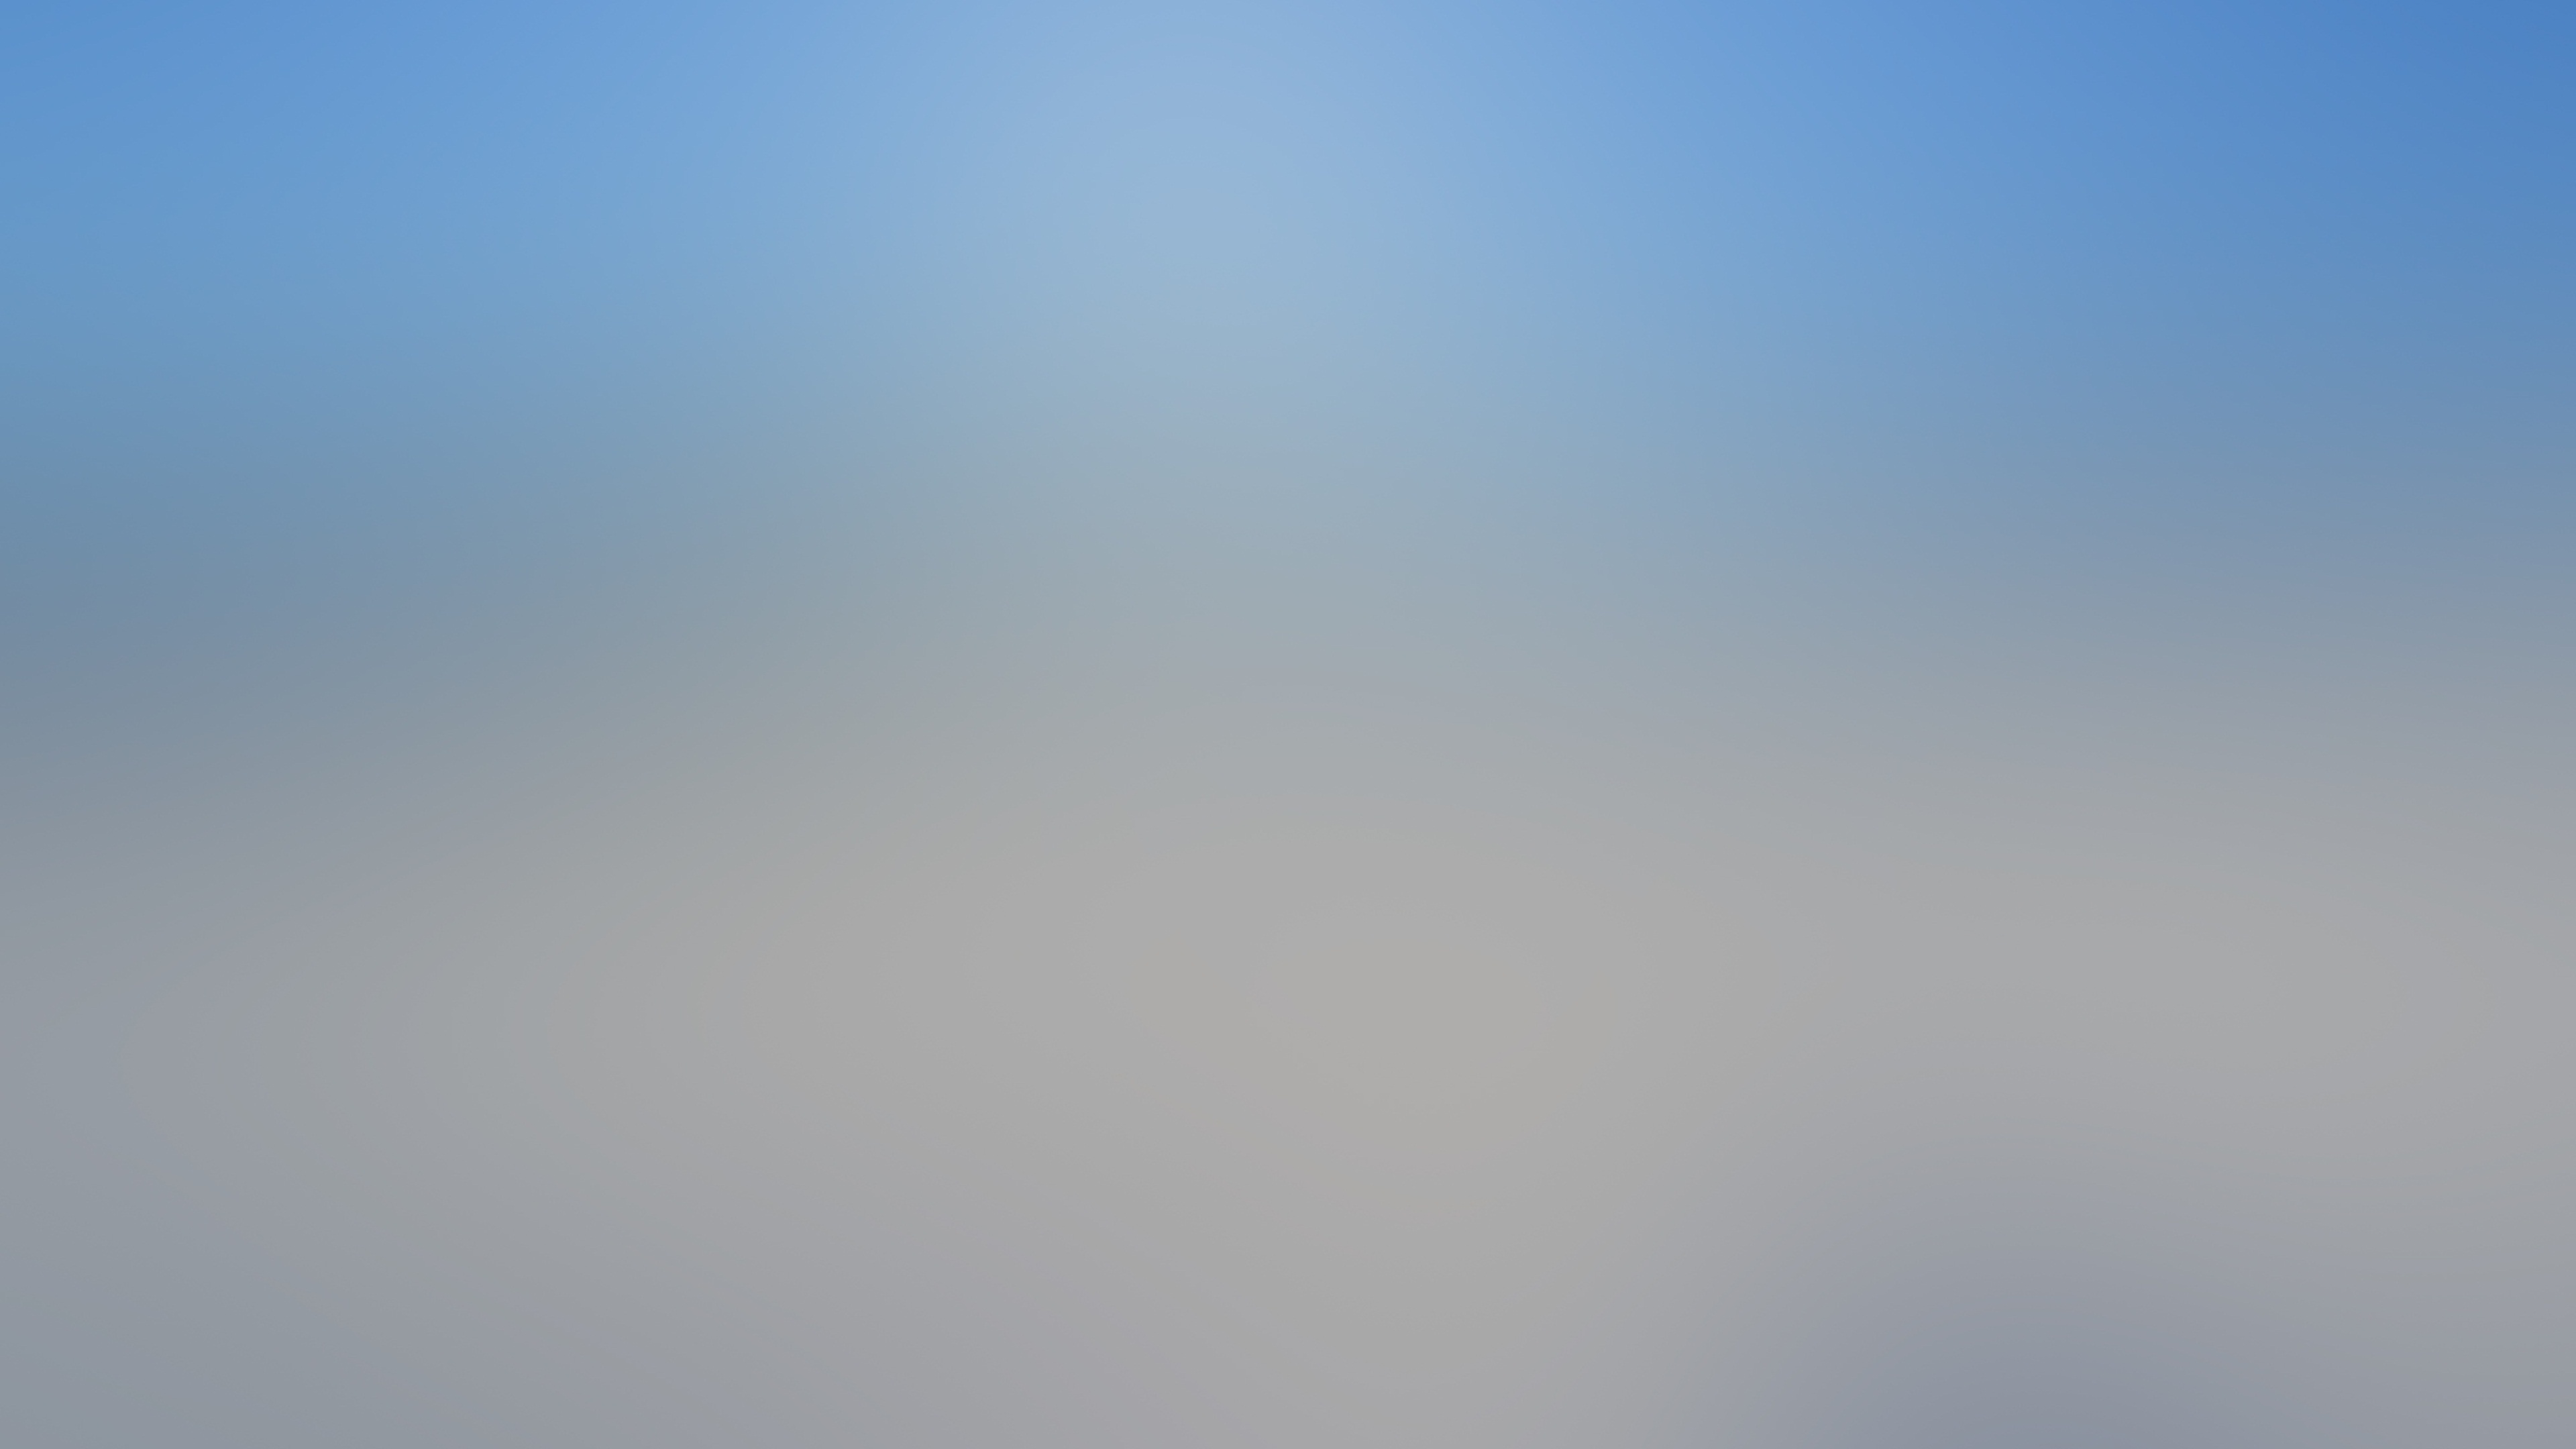 4k Blurred Backgrounds Desktop Widescreen Wallpaper - Wallpaper - HD Wallpaper 